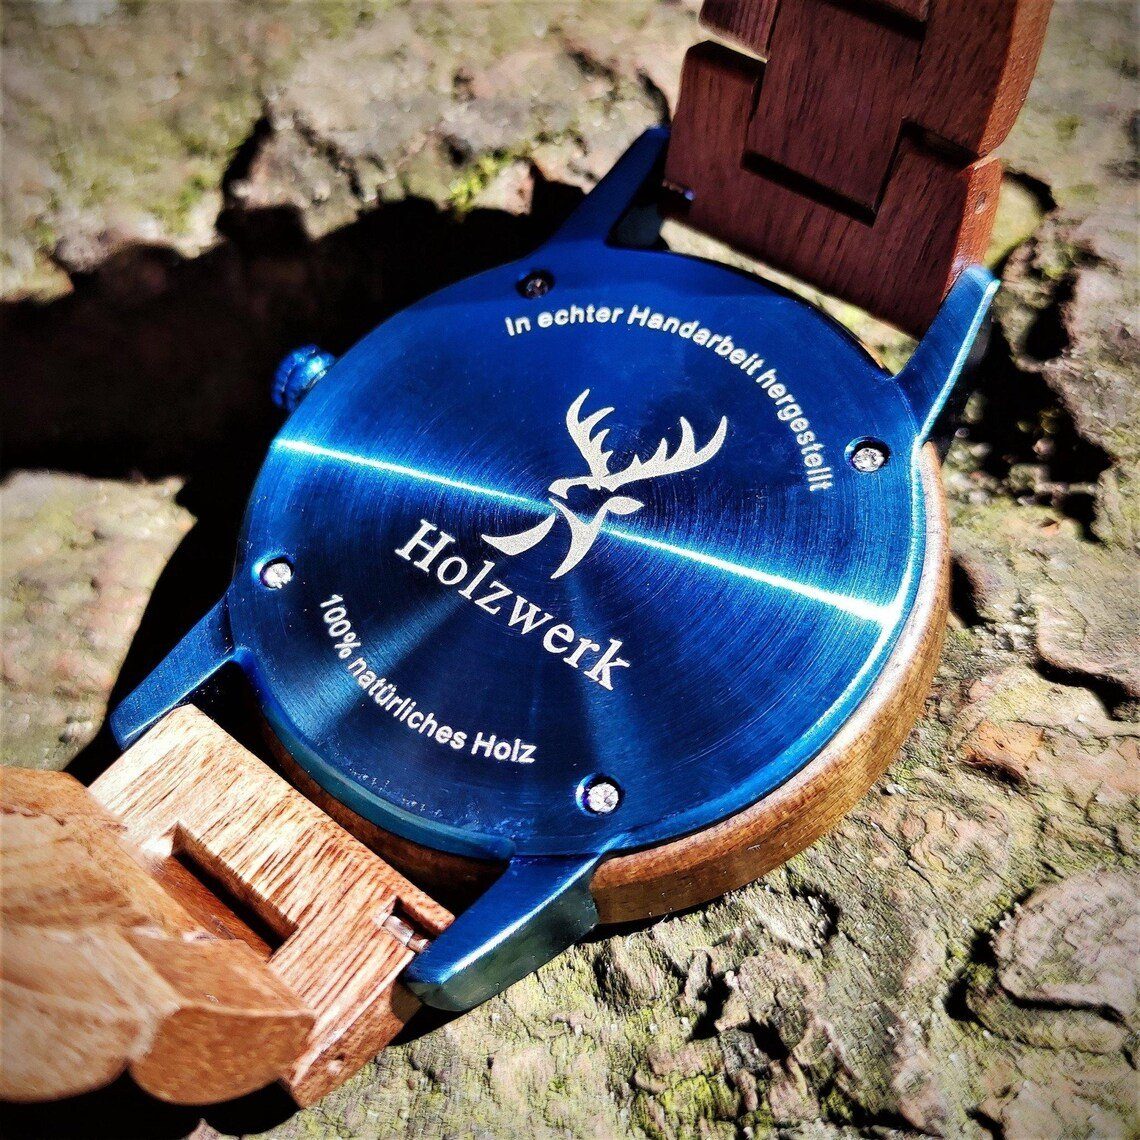 mit Herren braun, GARDING Holzwerk blau weiß Quarzuhr & Holz Armband Damen Datum, & Uhr